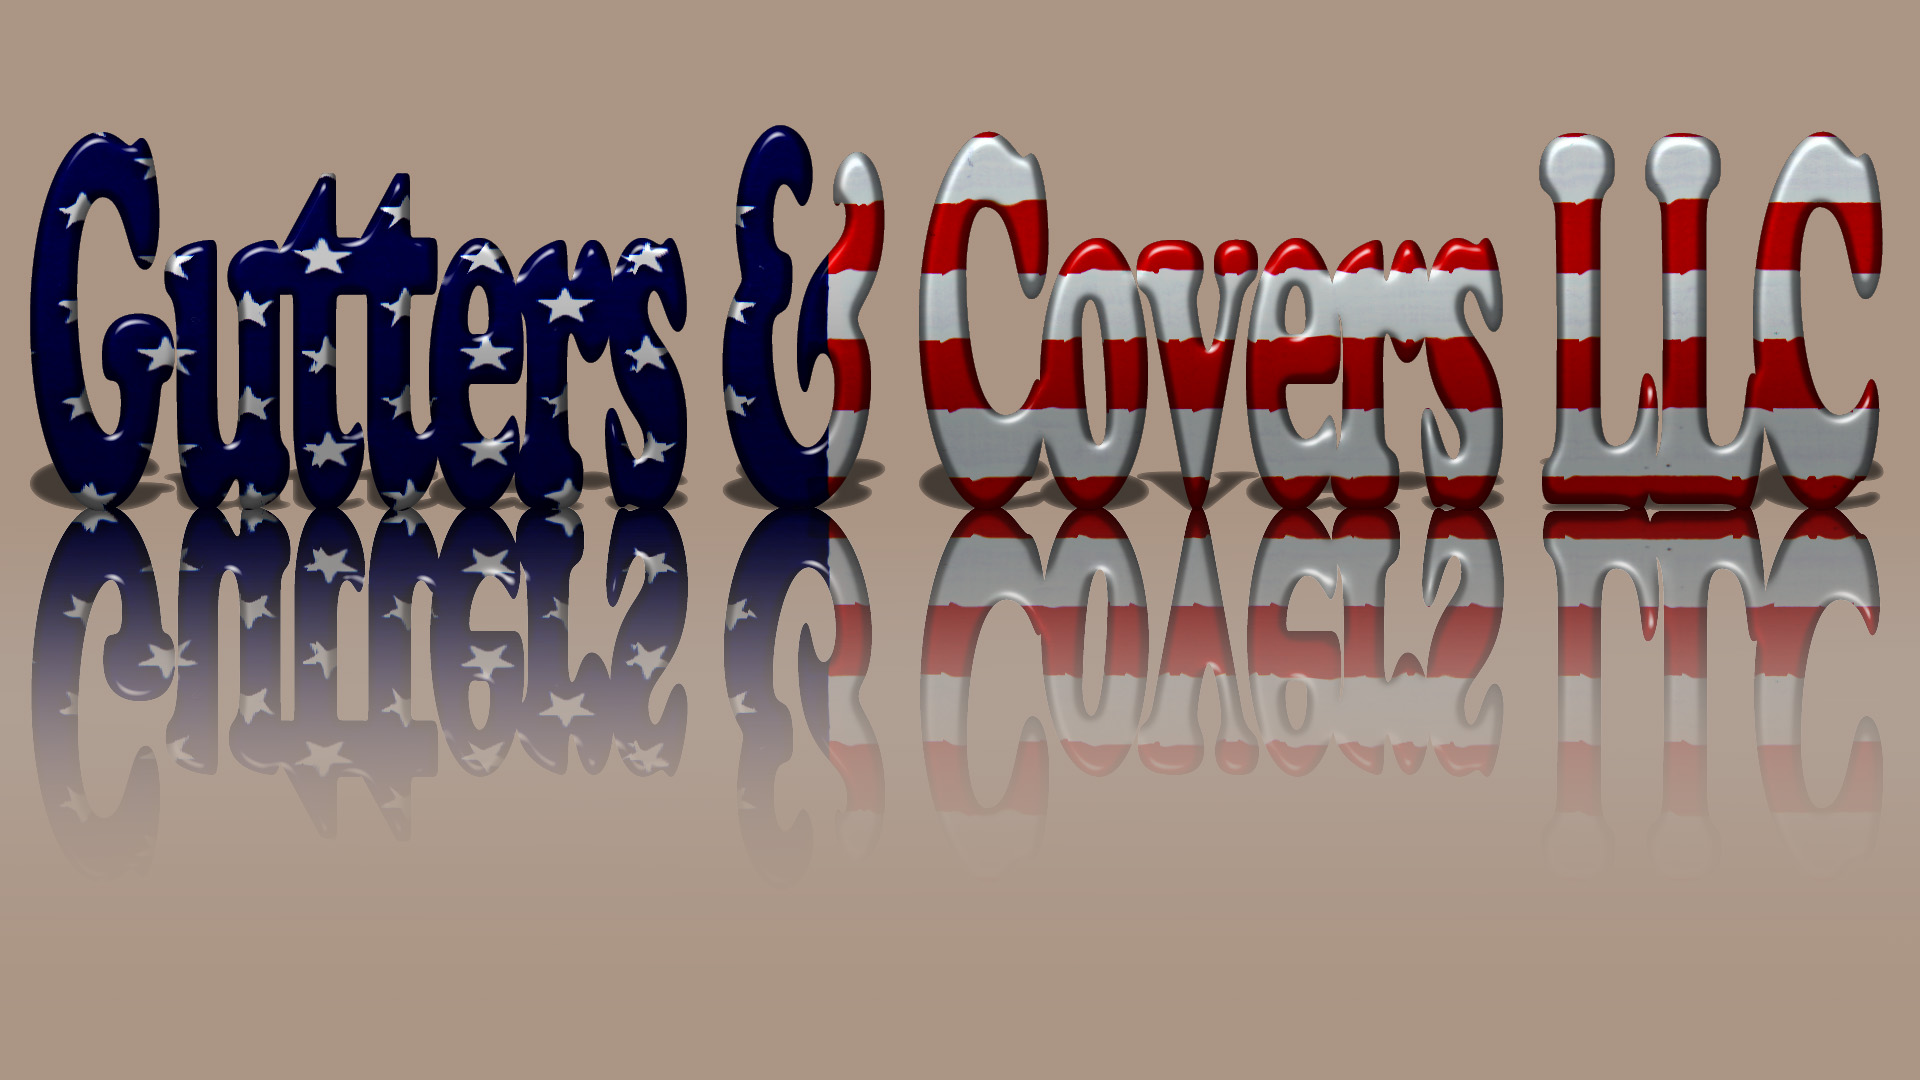 Gutters&CoversLLC